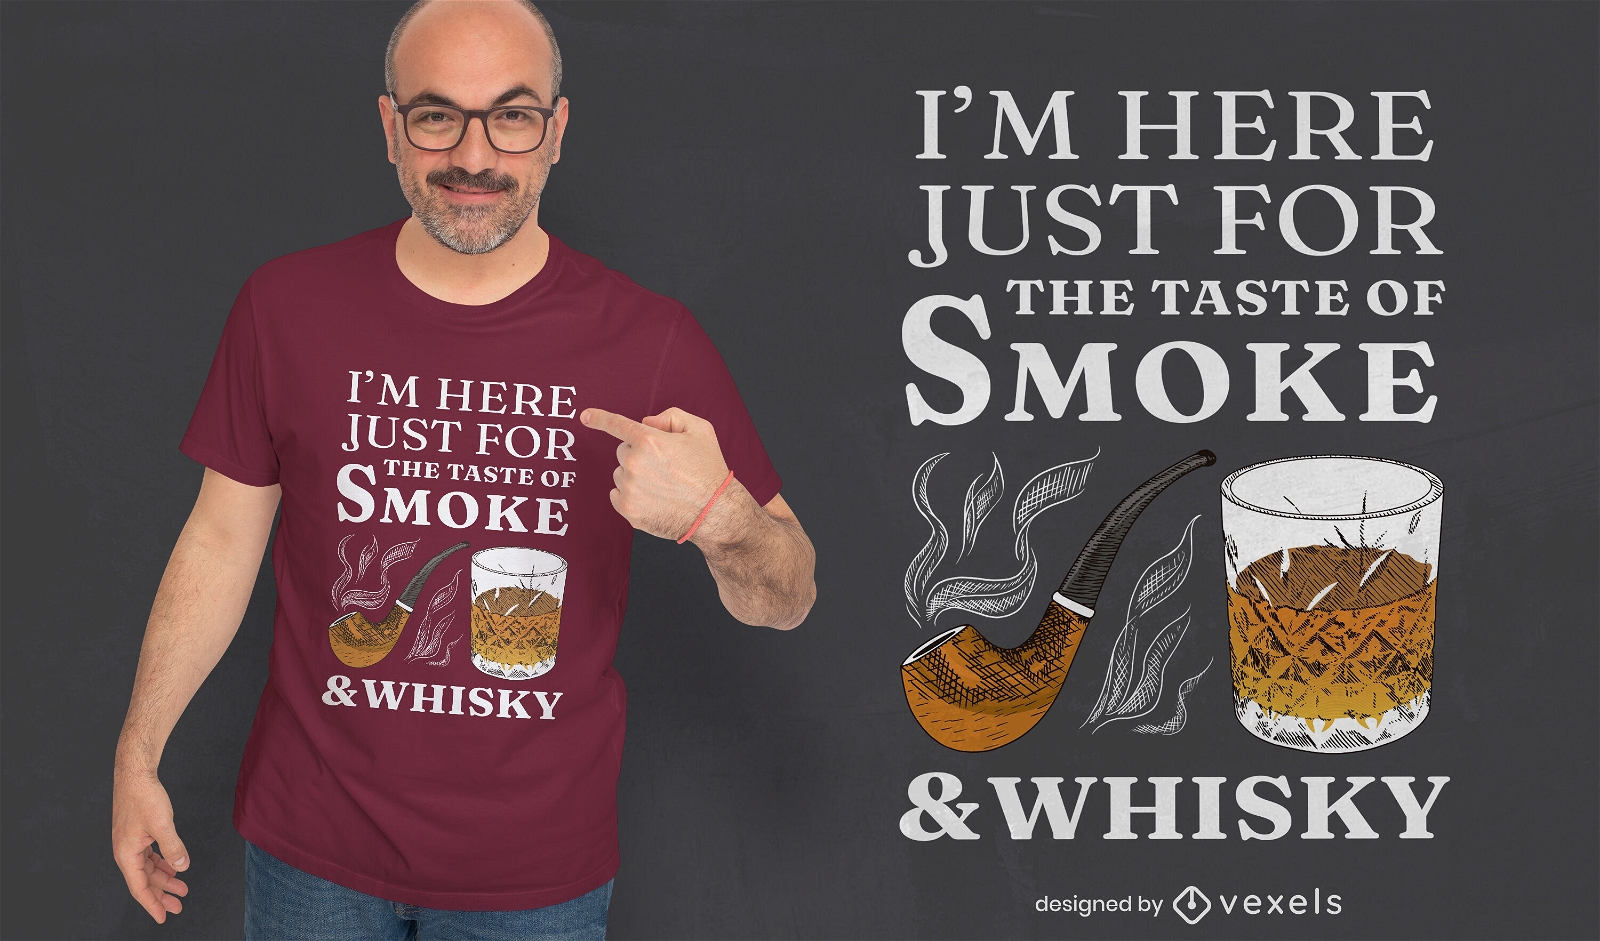 Dise?o de camiseta con cita de humo y whisky.